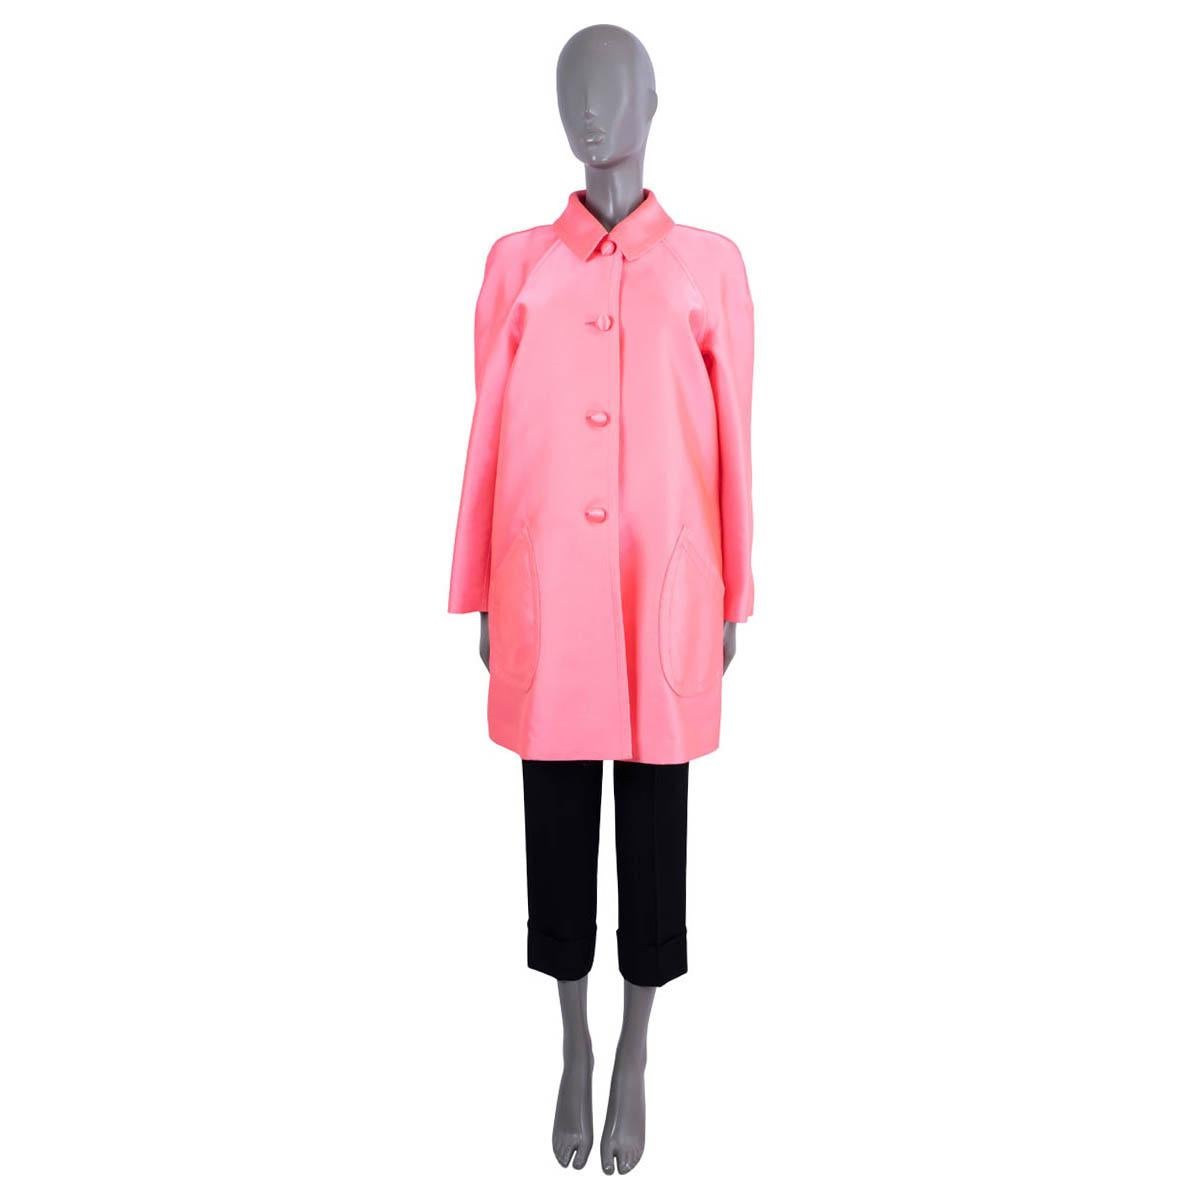 Manteau Christian Dior 100% authentique en polyester (69%) et soie (31%) rose néon. Il comporte deux poches sur le devant et une fente dans le dos. S'ouvre à l'aide de quatre boutons sur le devant. Non doublé. 

 2022